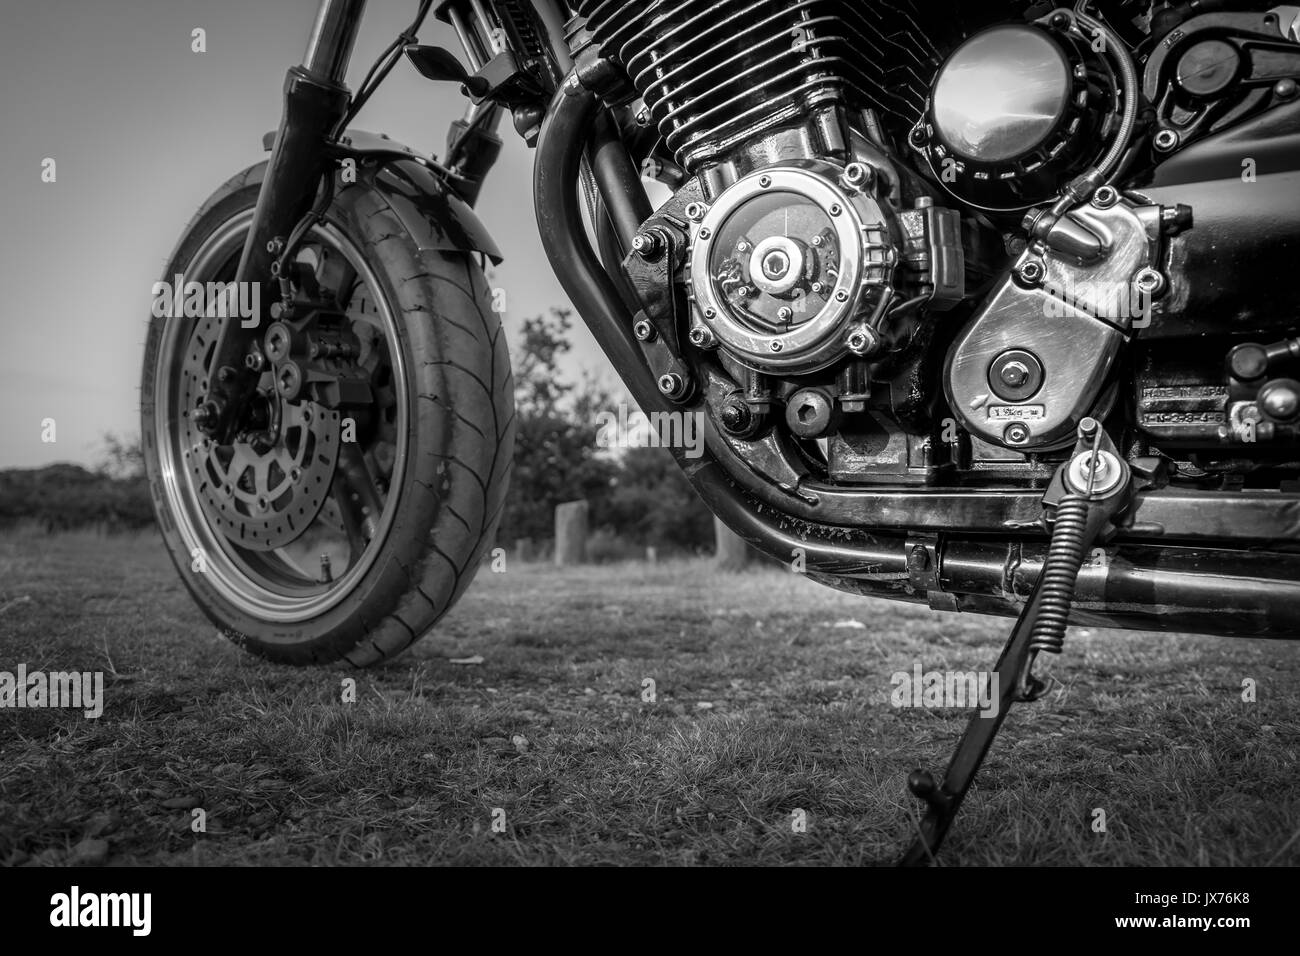 Gros plan du moteur d'une moto personnalisée en noir et blanc (hachoir) Banque D'Images